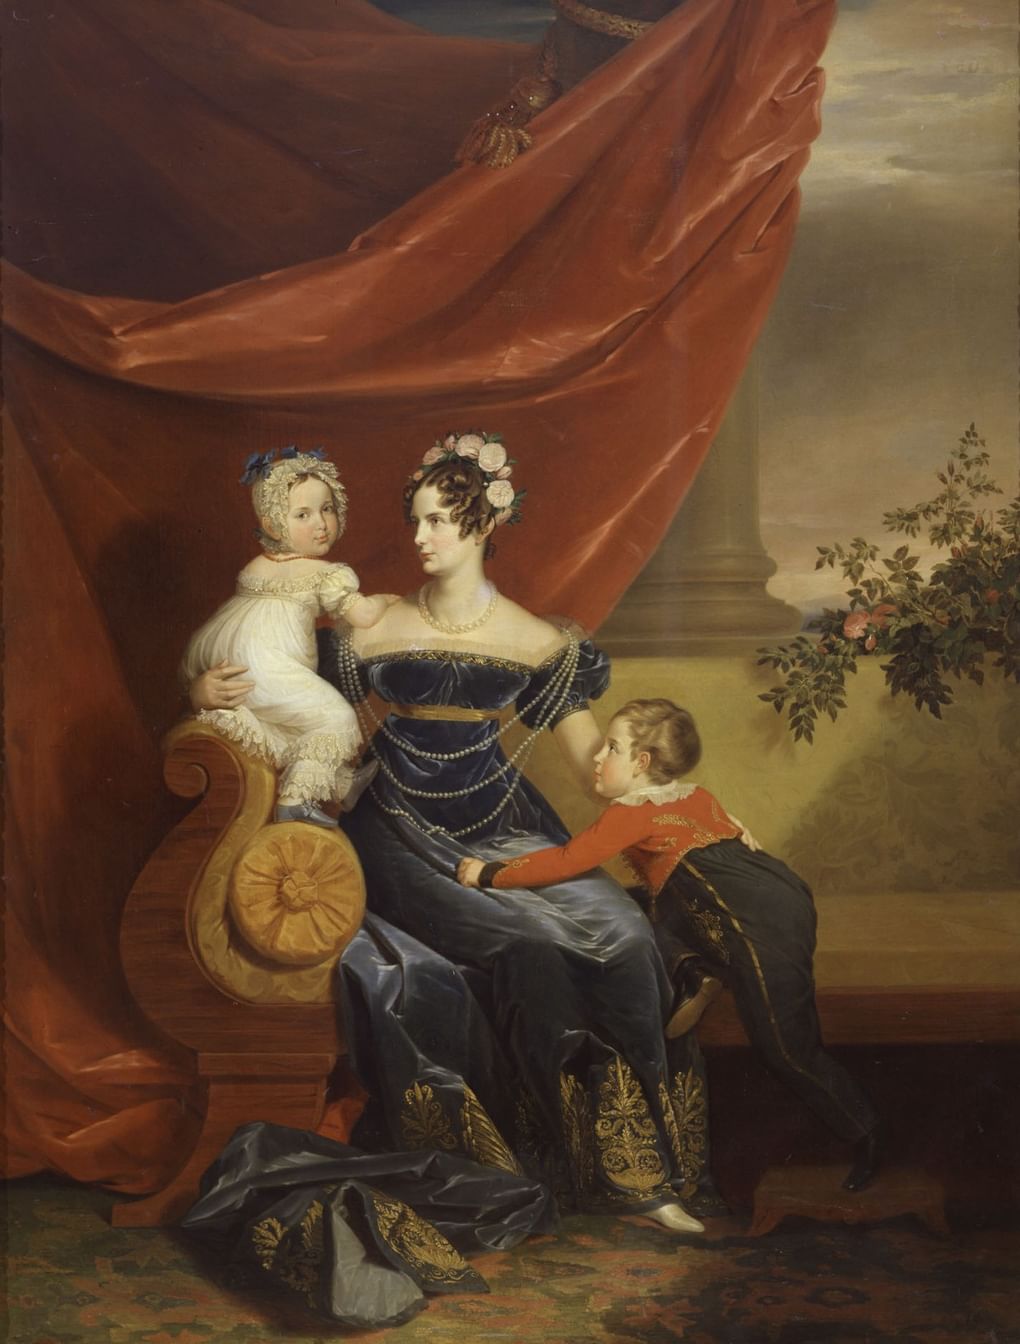 Джордж Доу. Портрет великой княгини Александры Федоровны с детьми.1821–1824